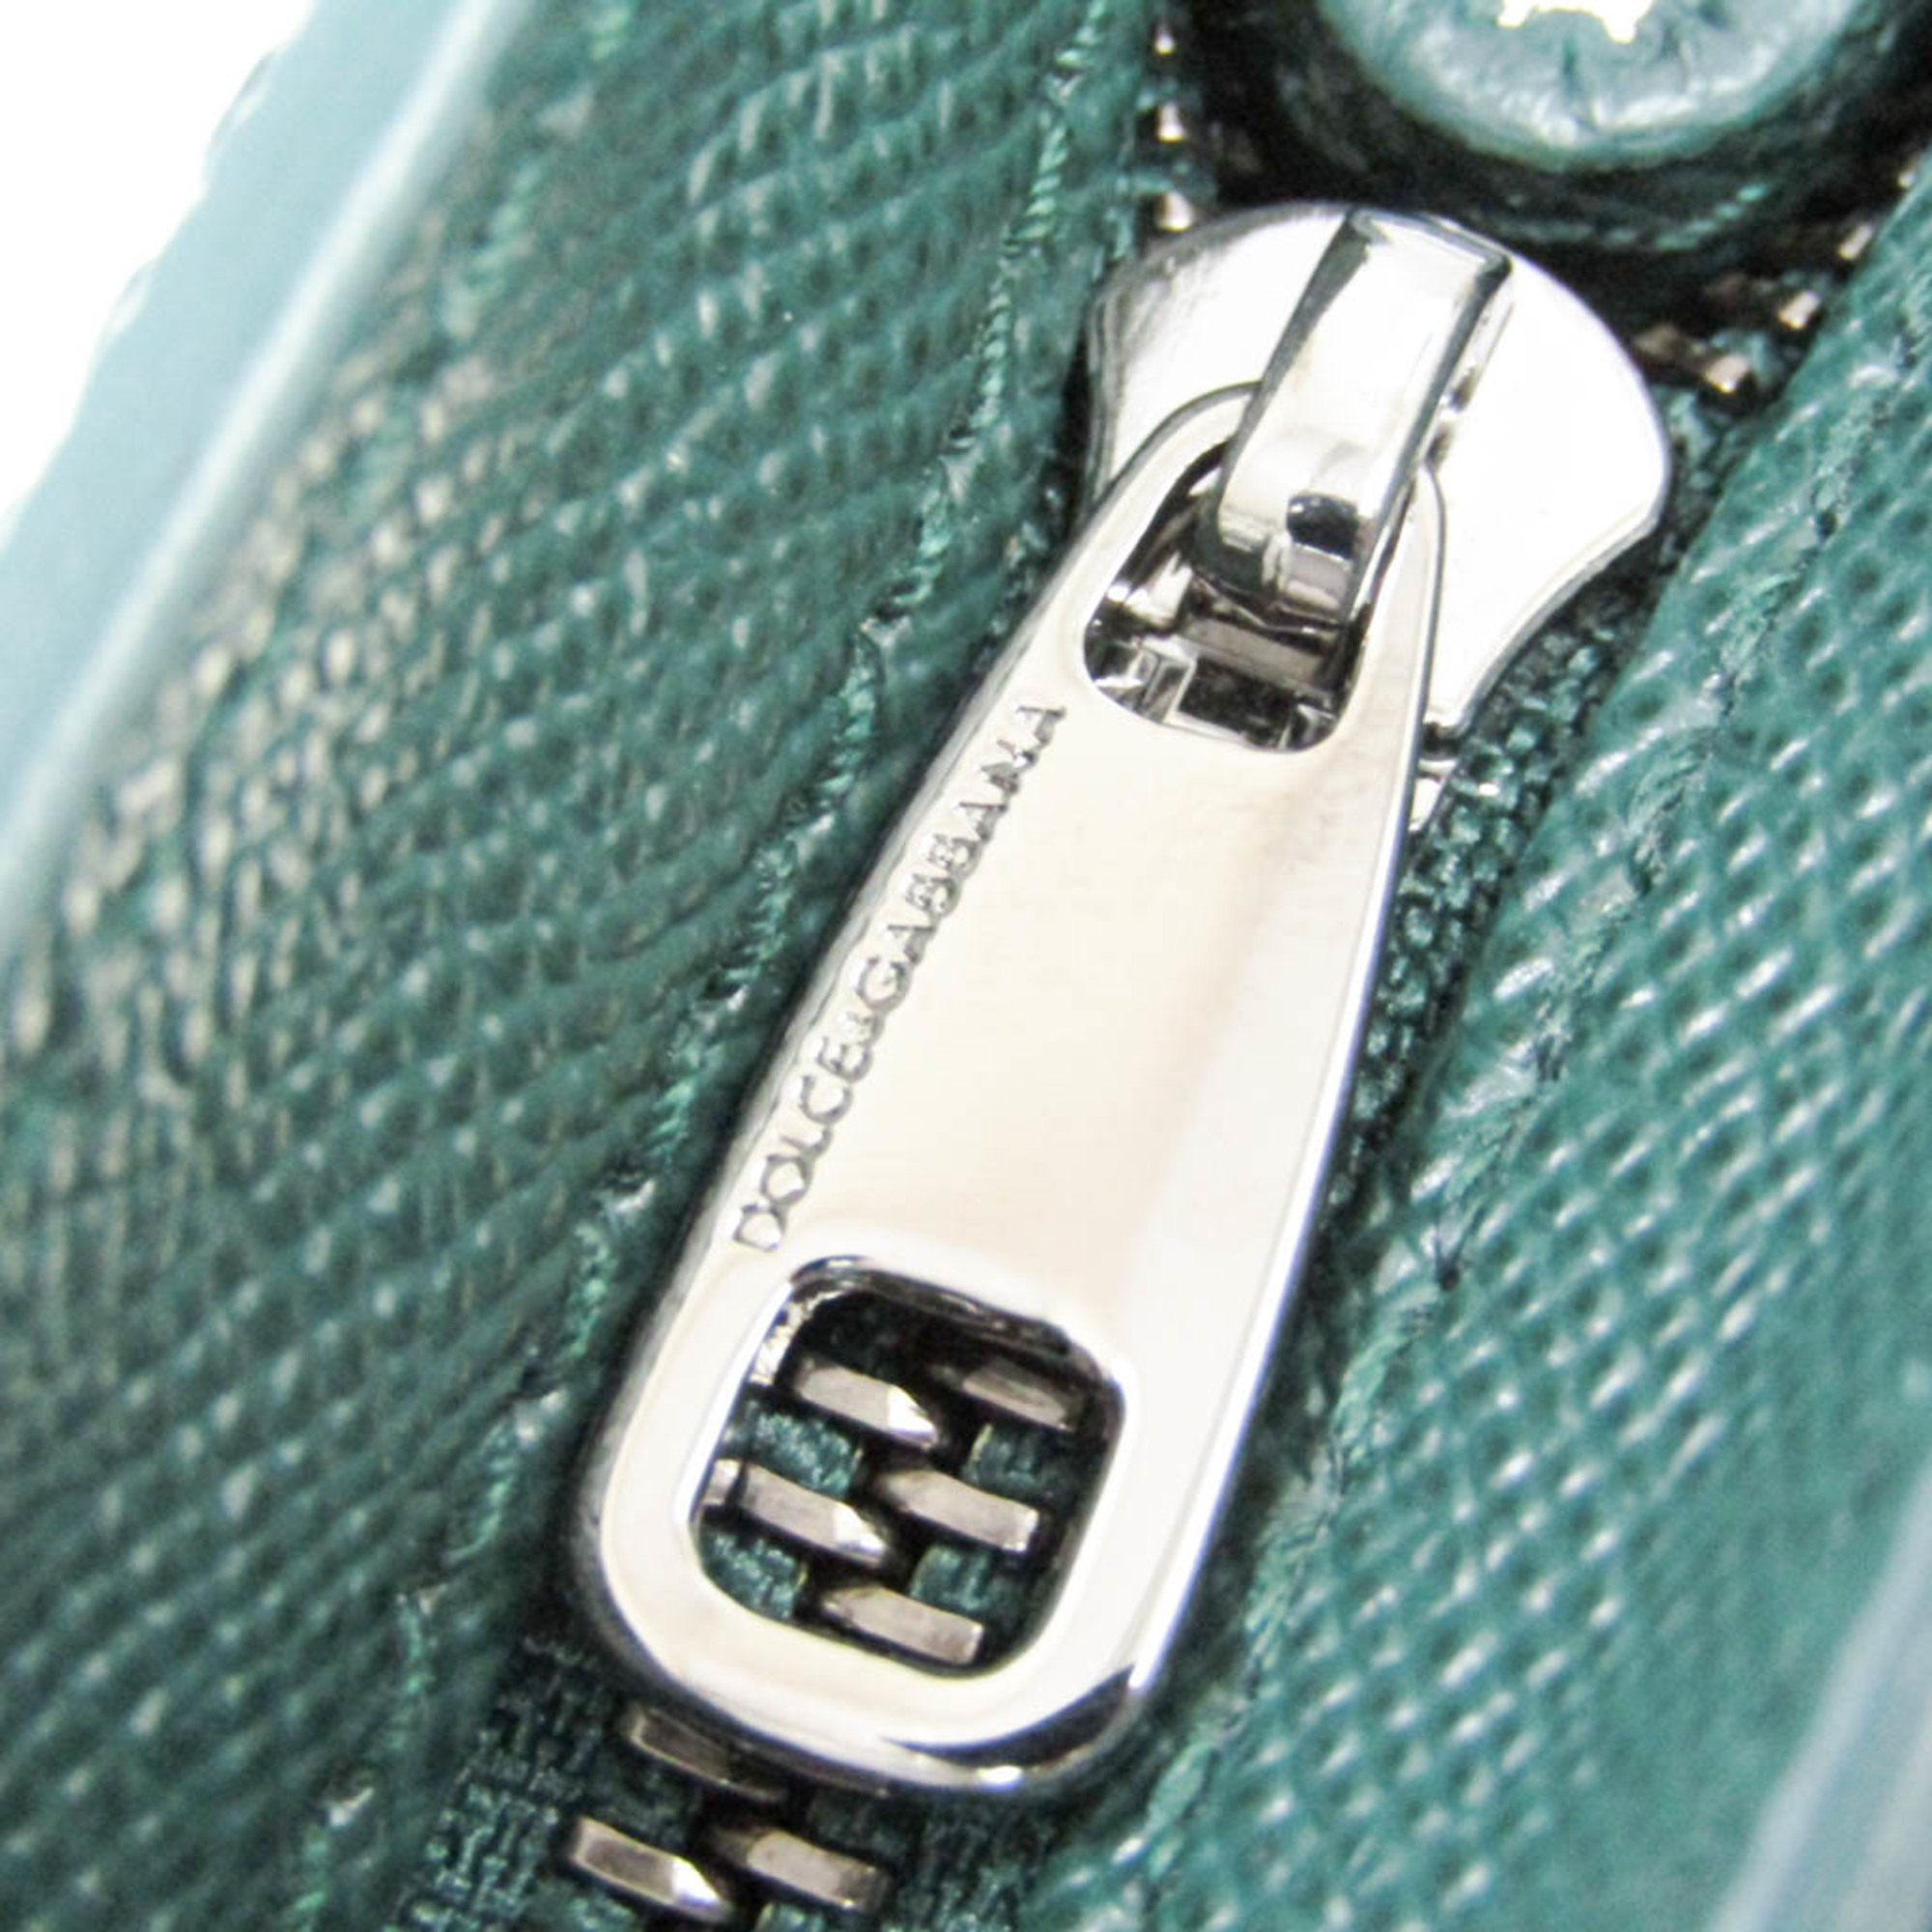 Dolce & Gabbana Men's Leather Briefcase Dark Green